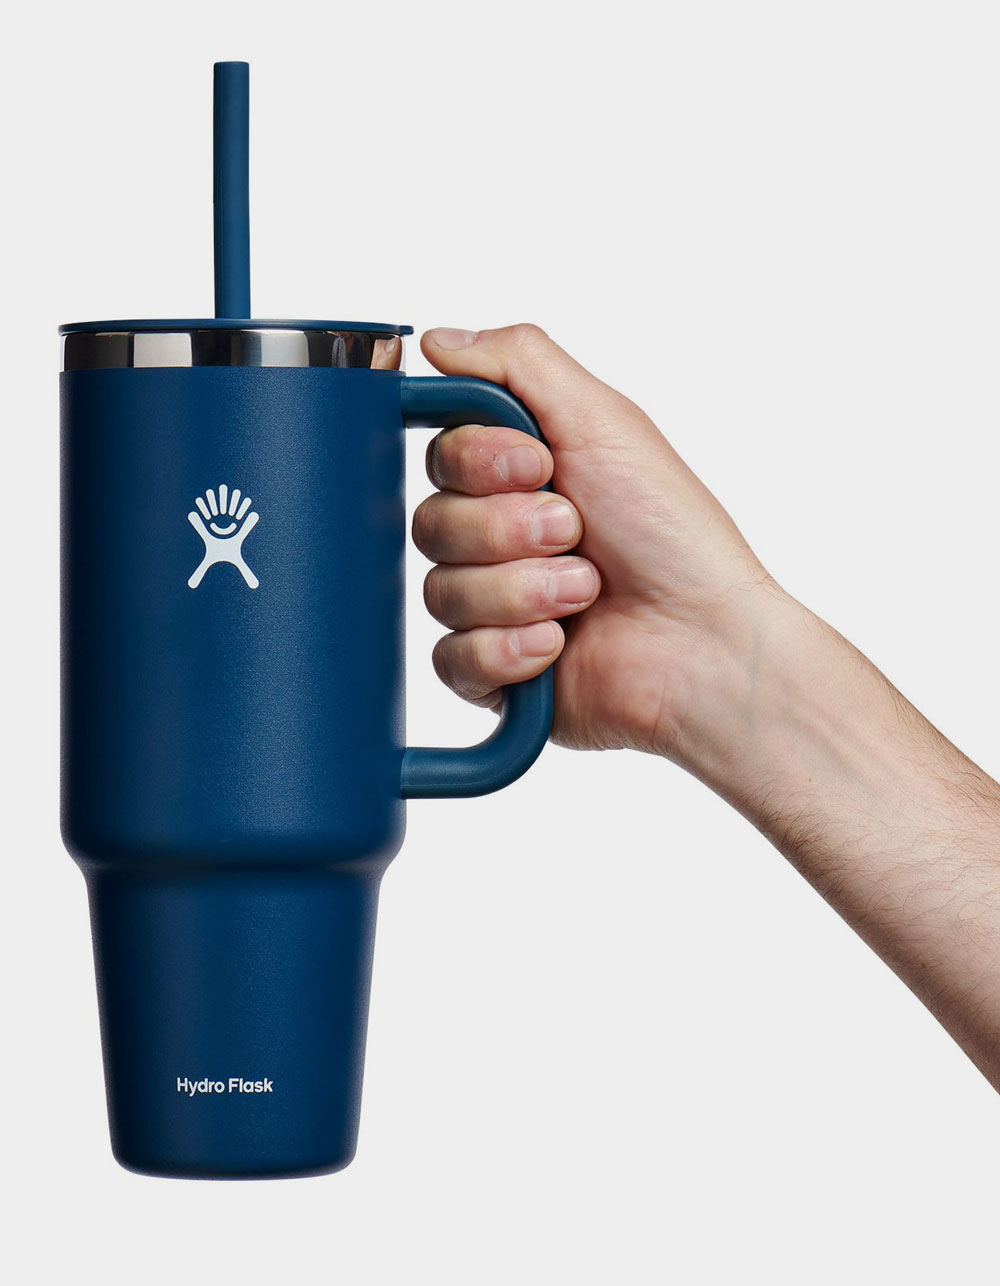 Hydro Flask 6 oz Coffee Mug Indigo